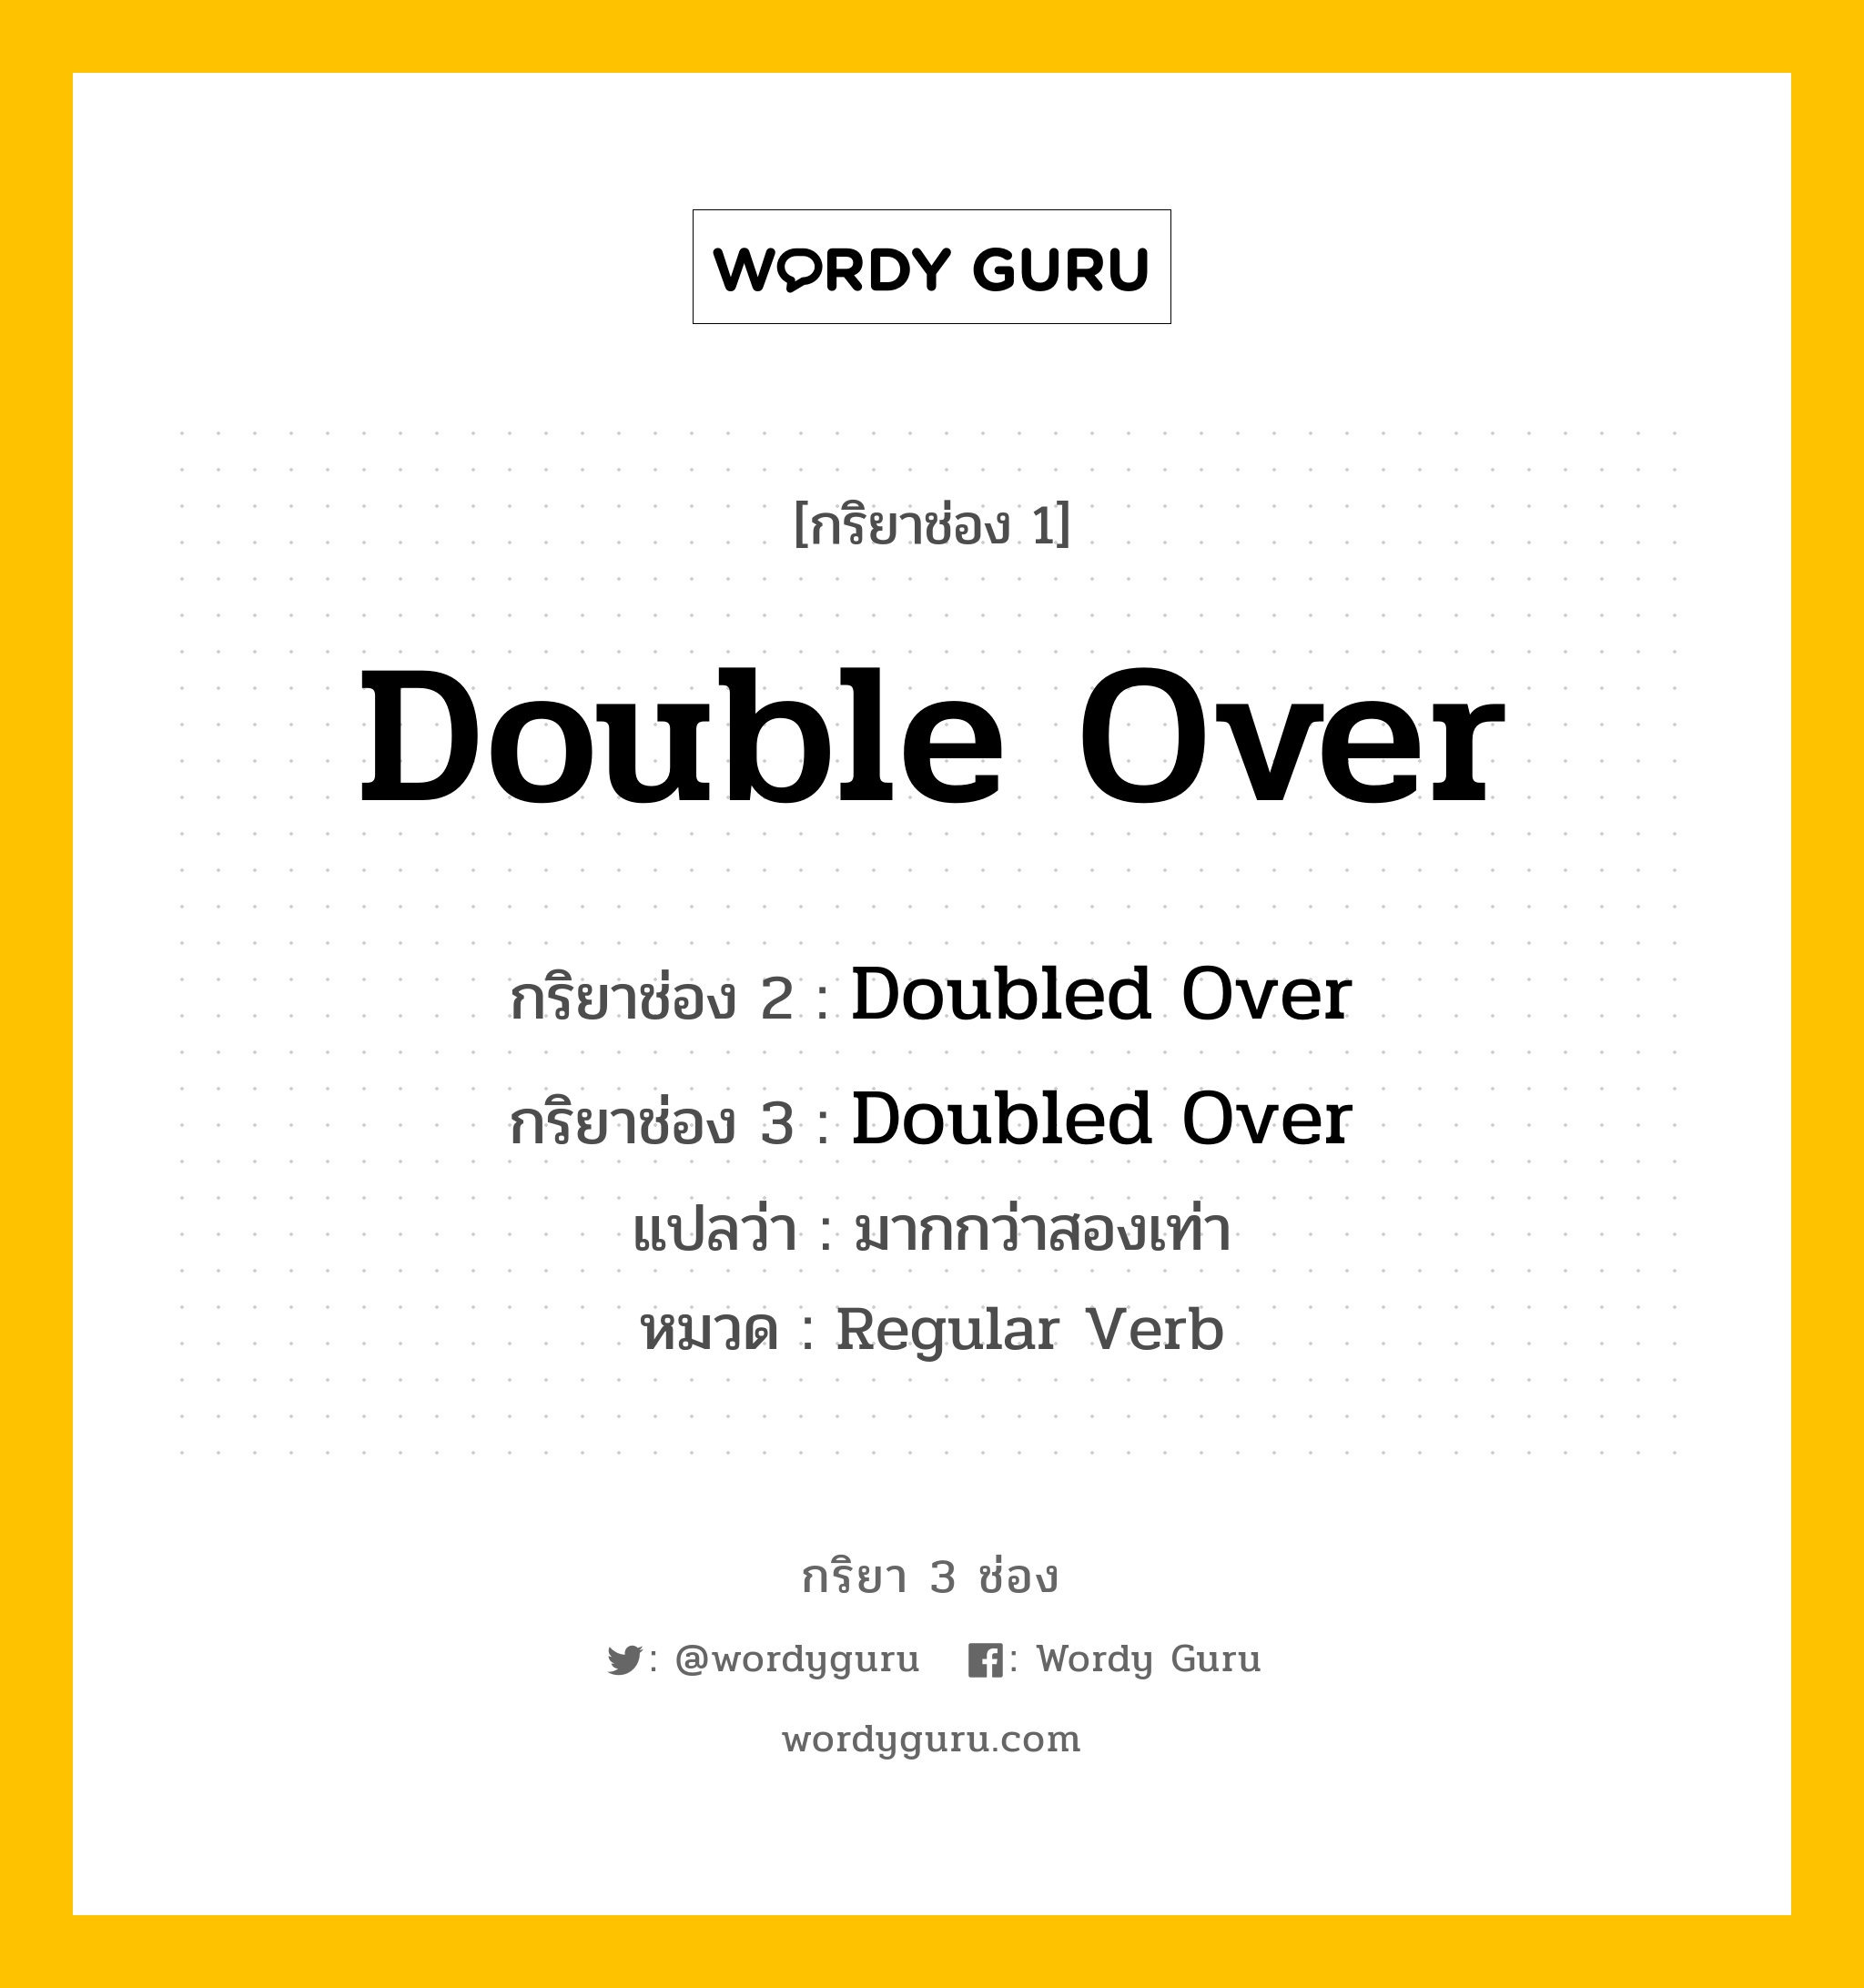 กริยา 3 ช่อง ของ Double Over คืออะไร? มาดูคำอ่าน คำแปลกันเลย, กริยาช่อง 1 Double Over กริยาช่อง 2 Doubled Over กริยาช่อง 3 Doubled Over แปลว่า มากกว่าสองเท่า หมวด Regular Verb หมวด Regular Verb